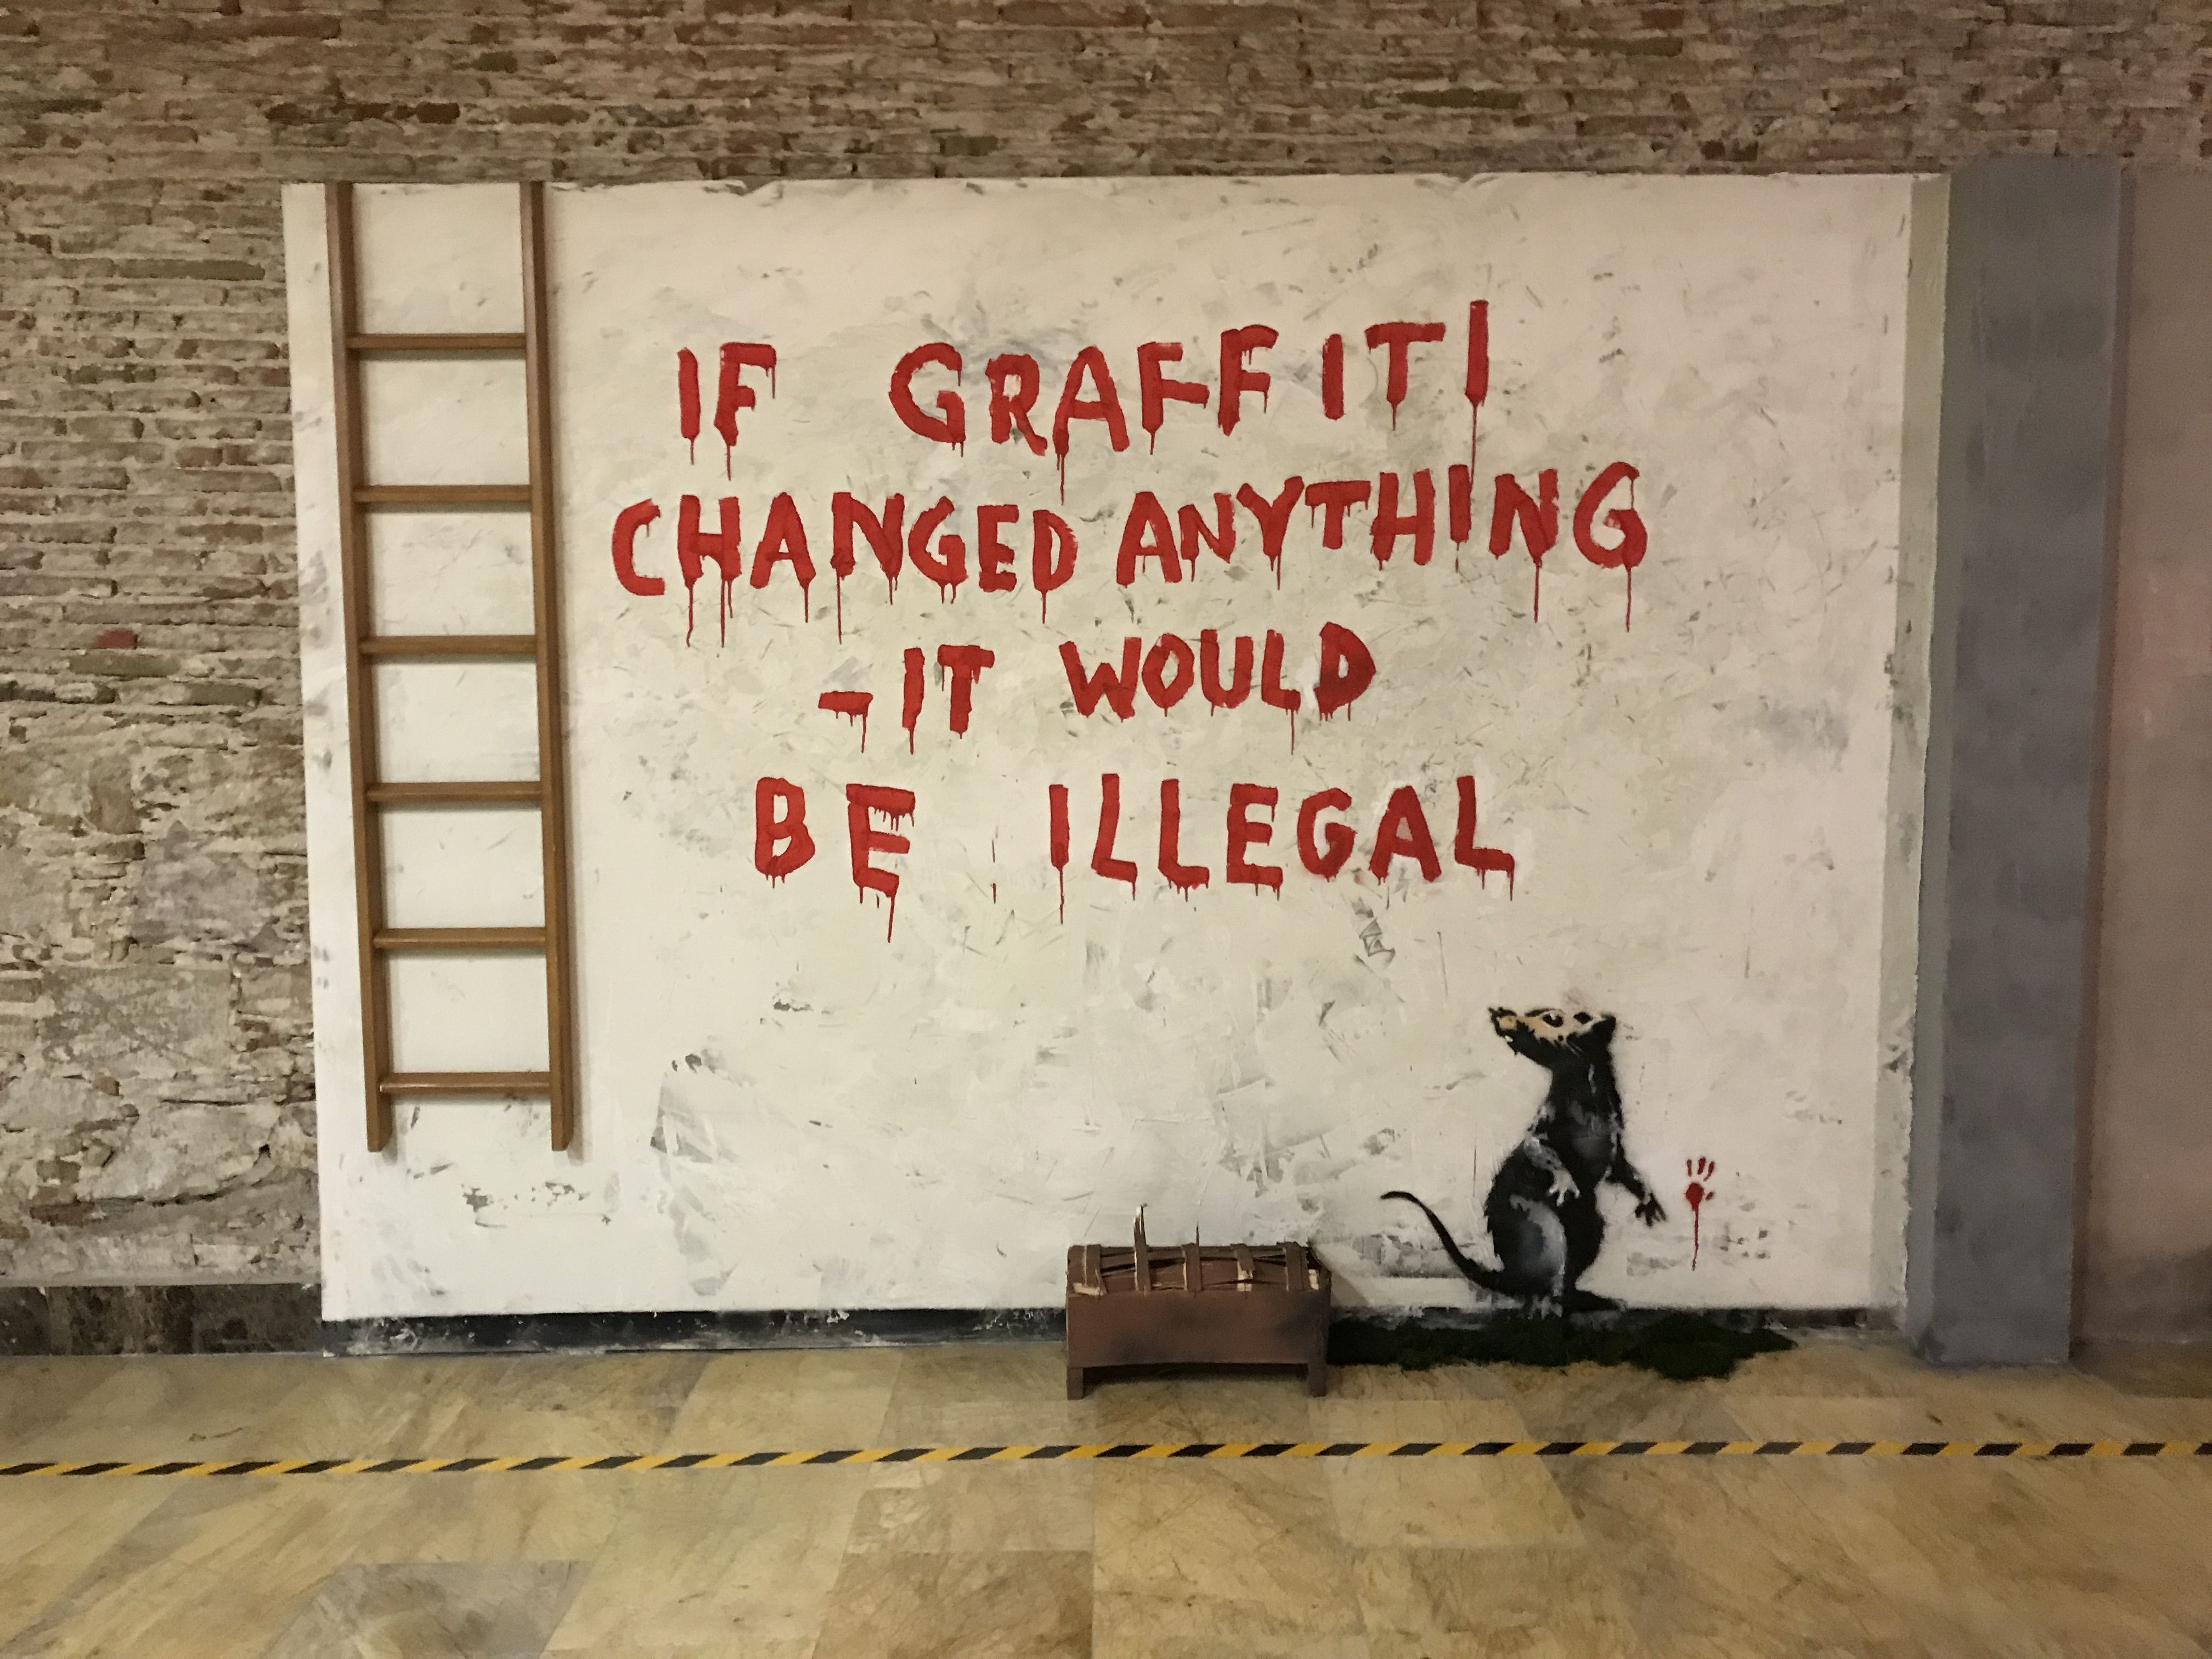 Una exposición de Banksy con más de 30 obras, protagonista del Círculo de Bellas Artes